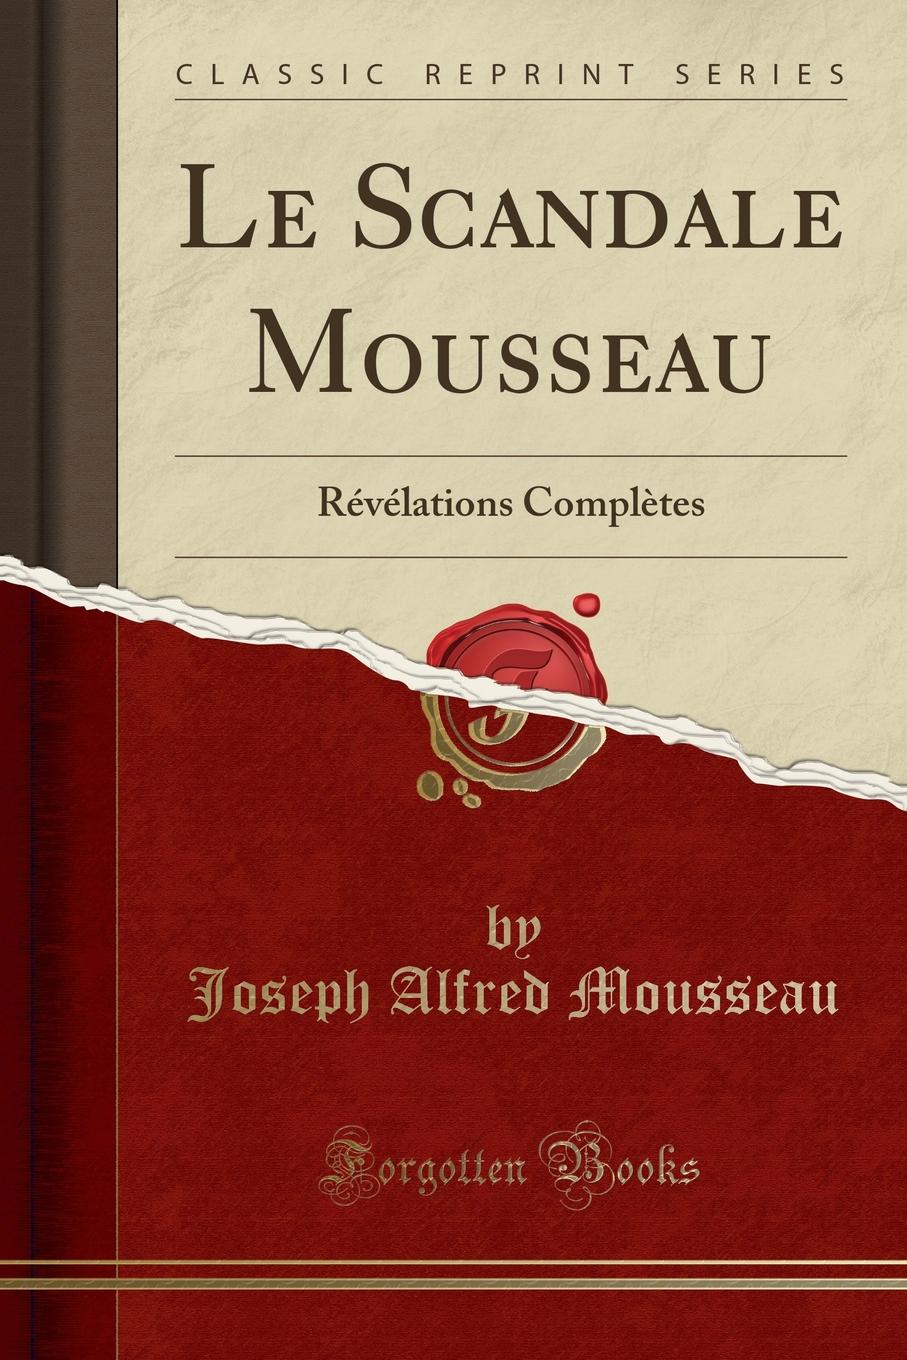 Joseph Alfred Mousseau Le Scandale Mousseau. Revelations Completes (Classic Reprint)